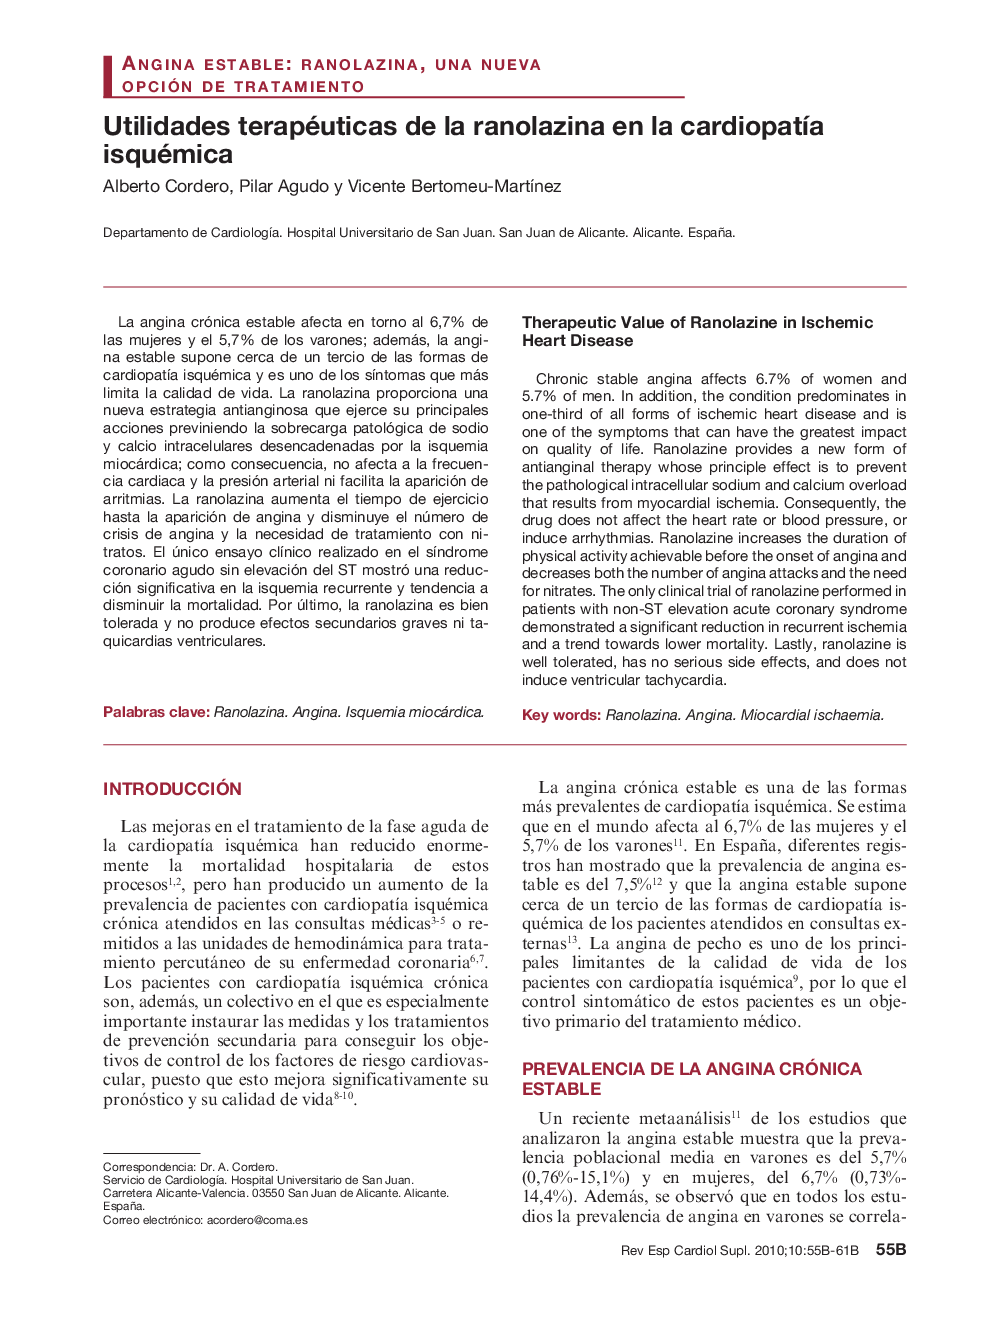 Utilidades terapéuticas de la ranolazina en la cardiopatía isquémica